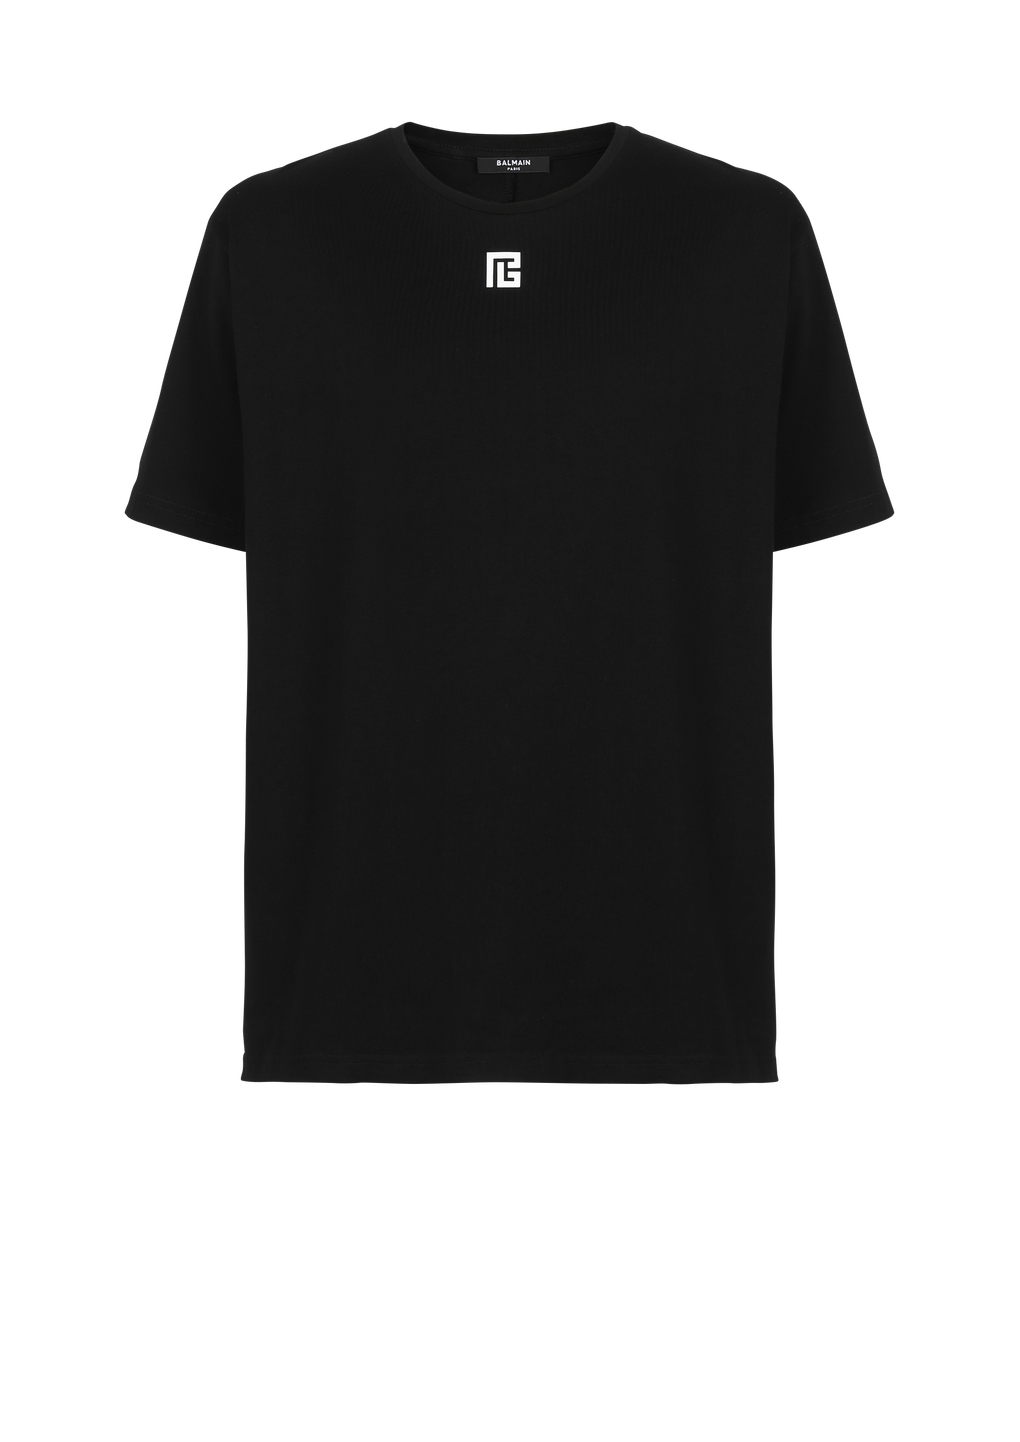 맥시 Balmain 로고 프린트 디테일 오버사이즈 코튼 티셔츠, 검정색, hi-res